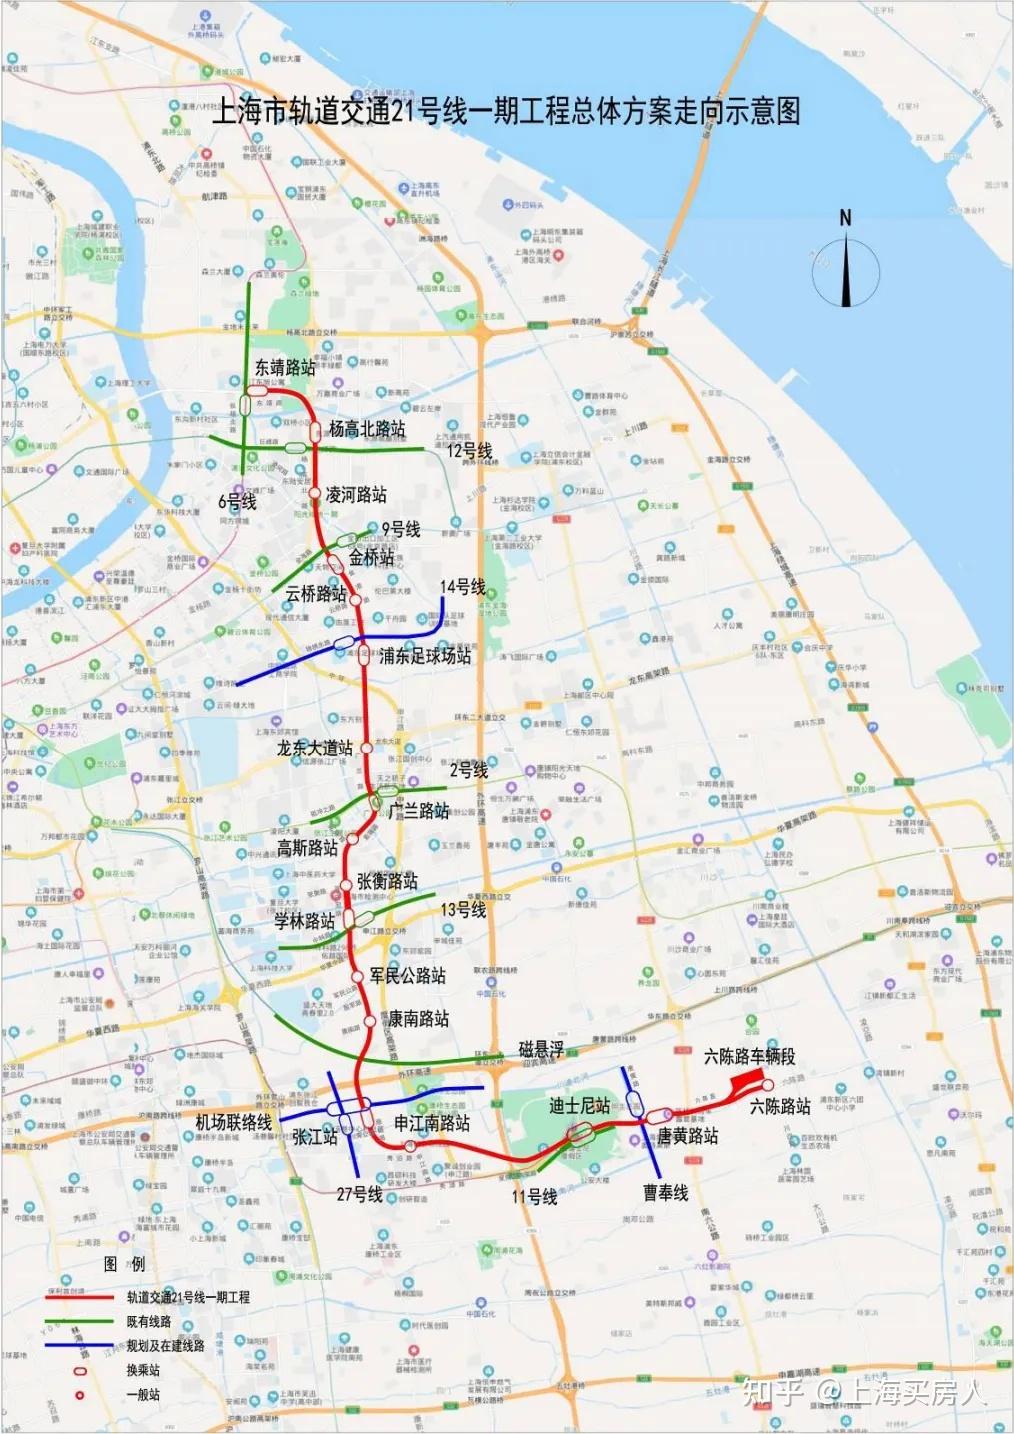 上海轨交21号线一期,起于六陈路站,终于东靖路站,线路主要沿六陈路